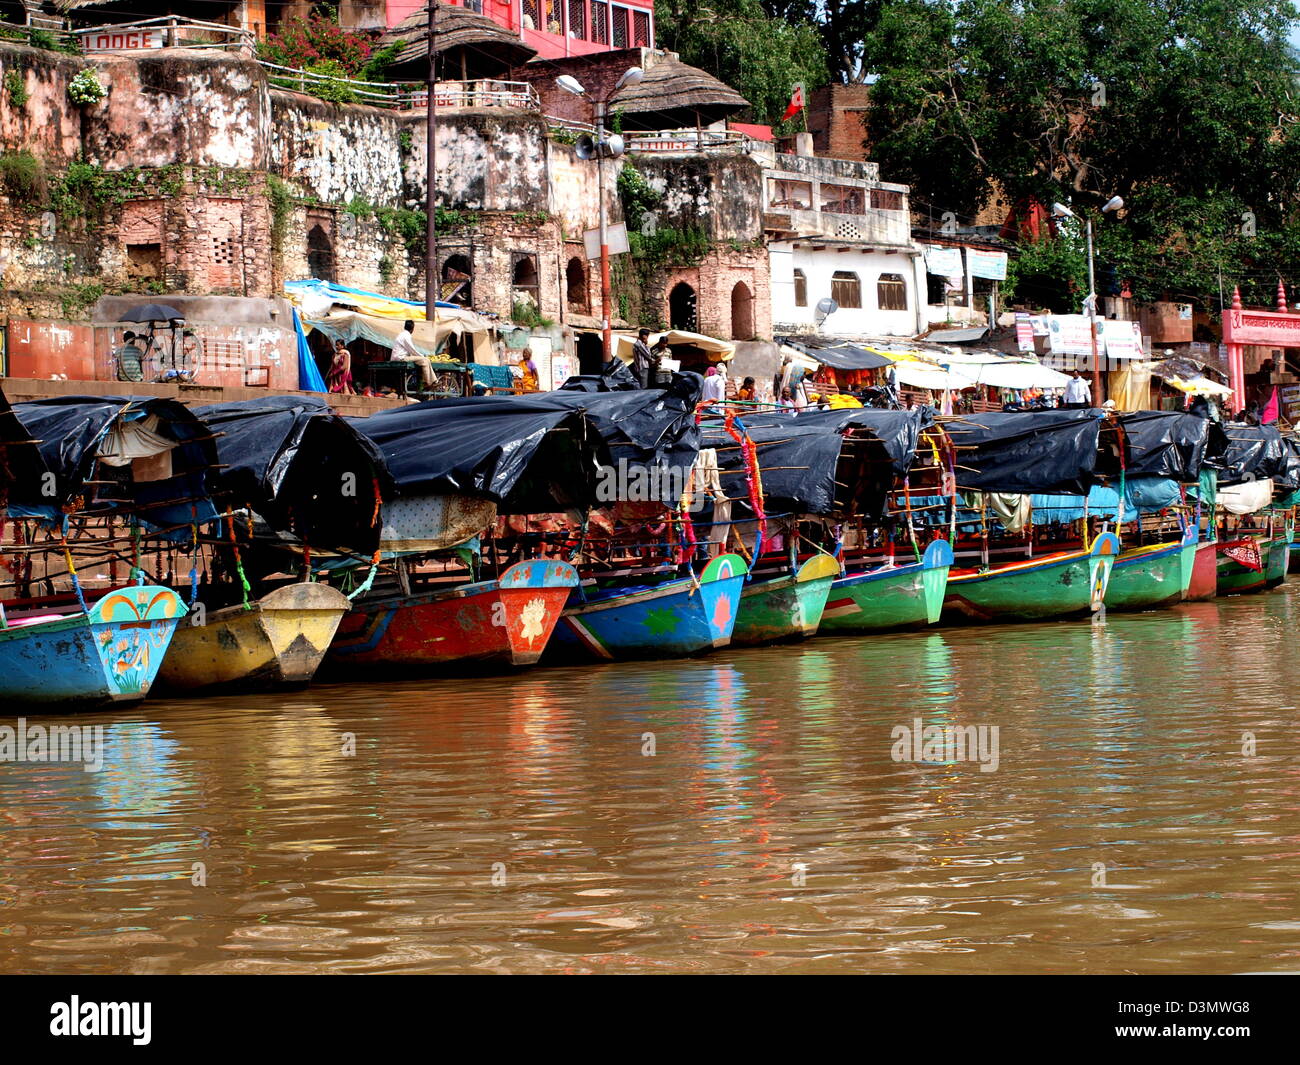 Boats on the Mandakini river in Chitrakoot (Chitrakuta), India Stock Photo